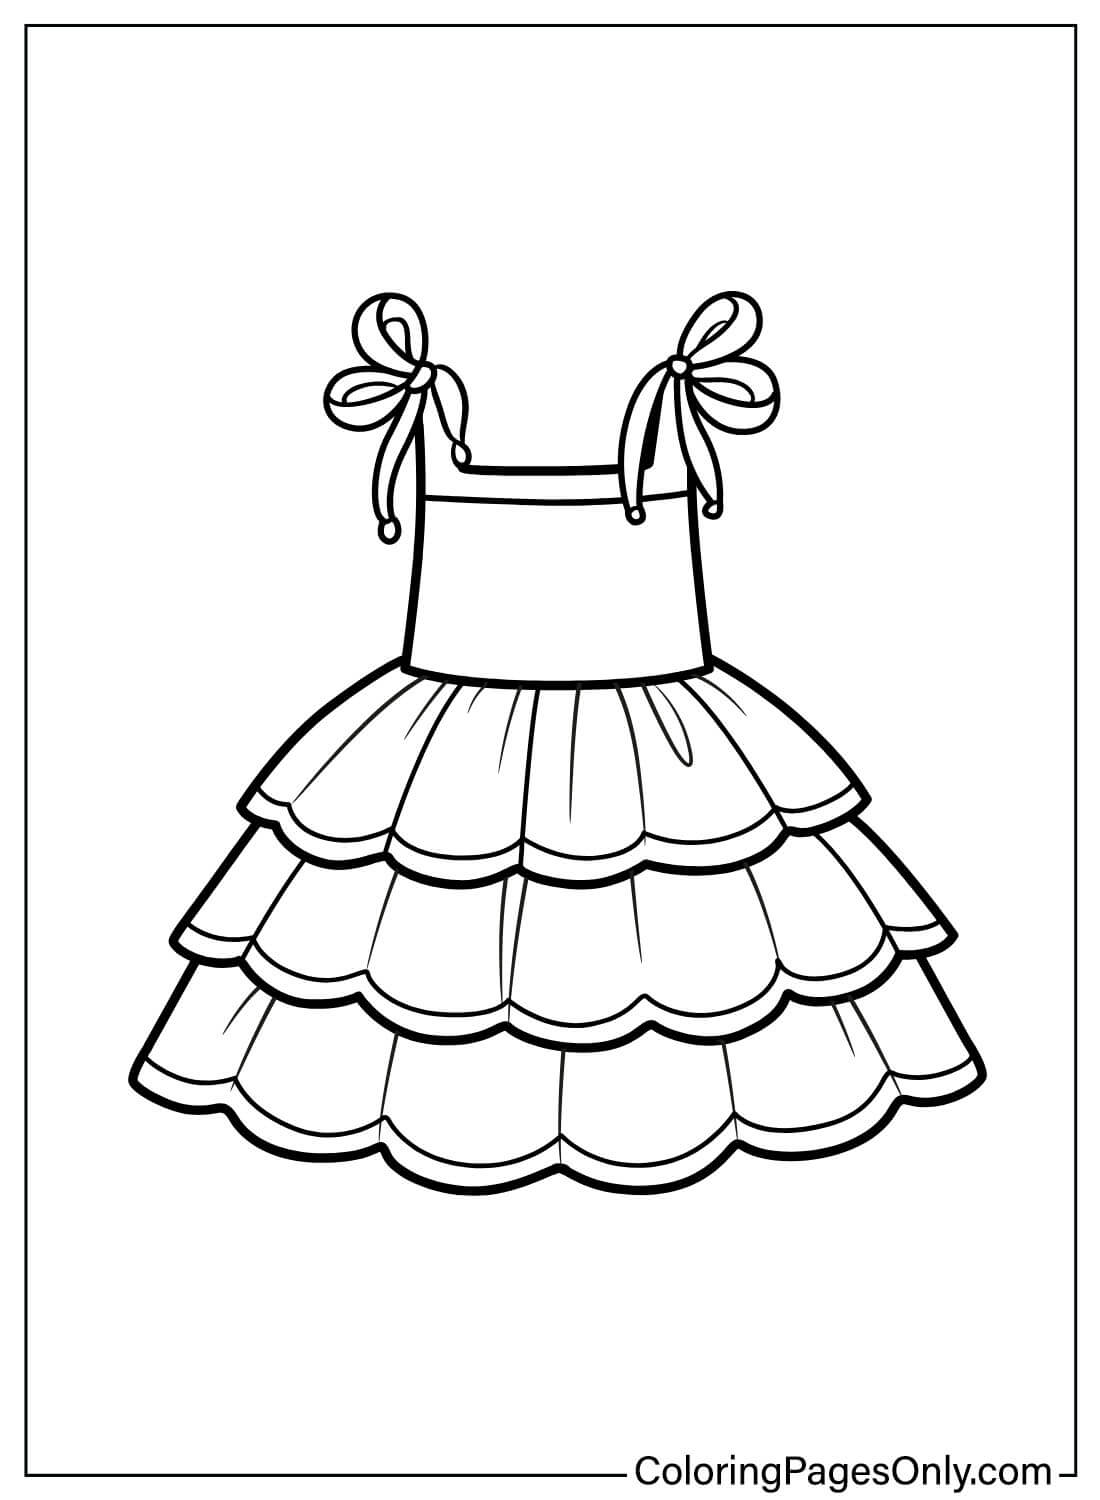 Página para colorear de vestido de bebé gratis de Baby Dress